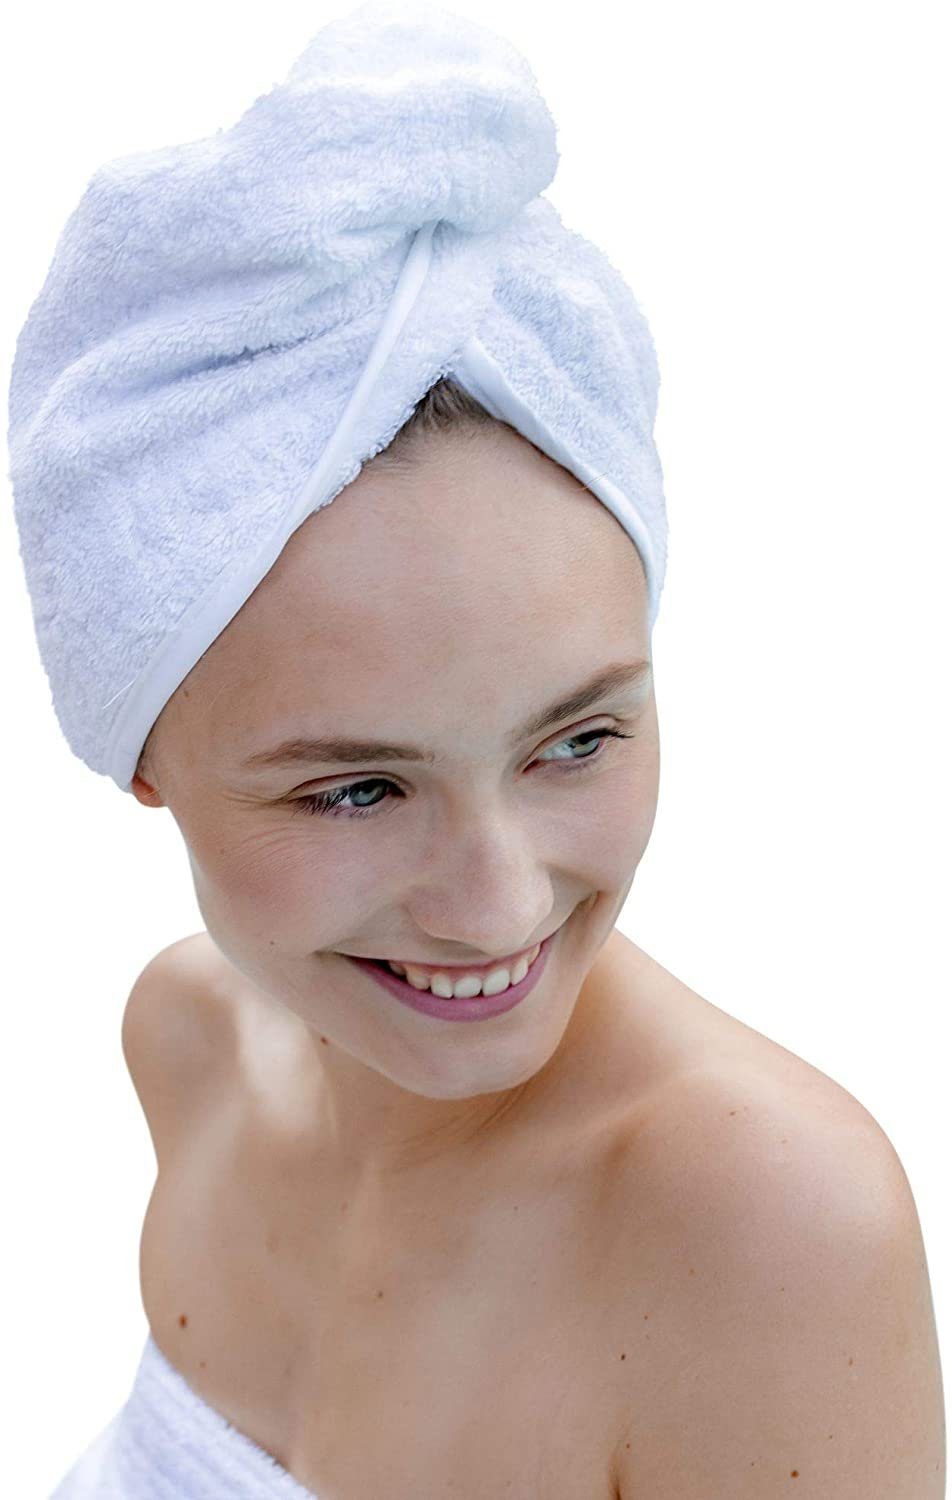 Carenesse Turban-Handtuch Haarturban Baumwolle weiß mit Knopf & Schlaufe saugstark hair towel, Stabiles Haarhandtuch aus 100% Baumwolle OHNE Mikroplastik